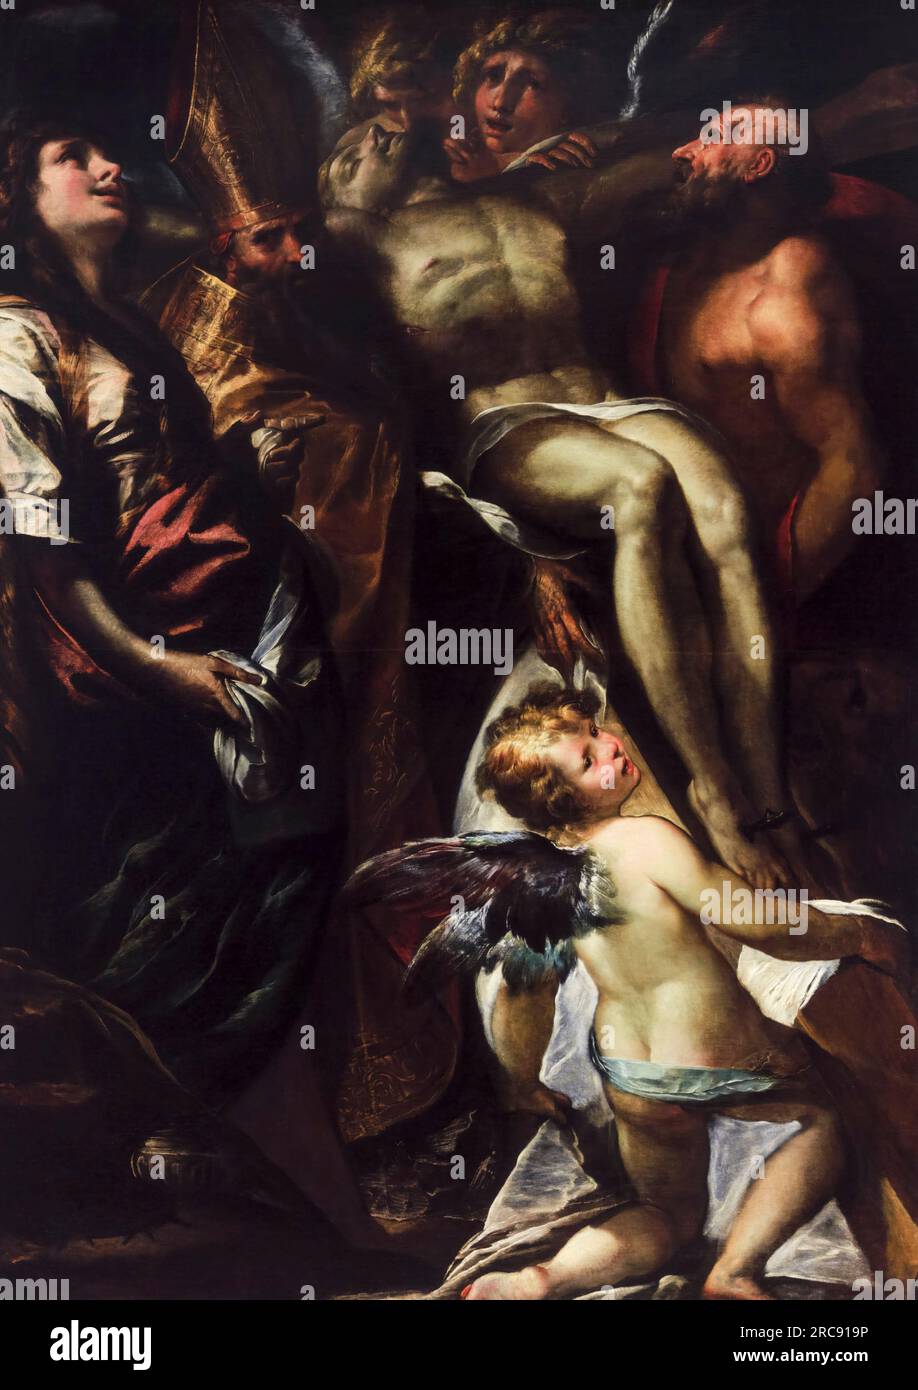 Giulio Cesare Procaccini, l'abaissement de la Croix avec Sainte Marie Madeleine, Saint Augustin, Saint Jérôme et Anges, peinture à l'huile sur toile, vers 1618 Banque D'Images